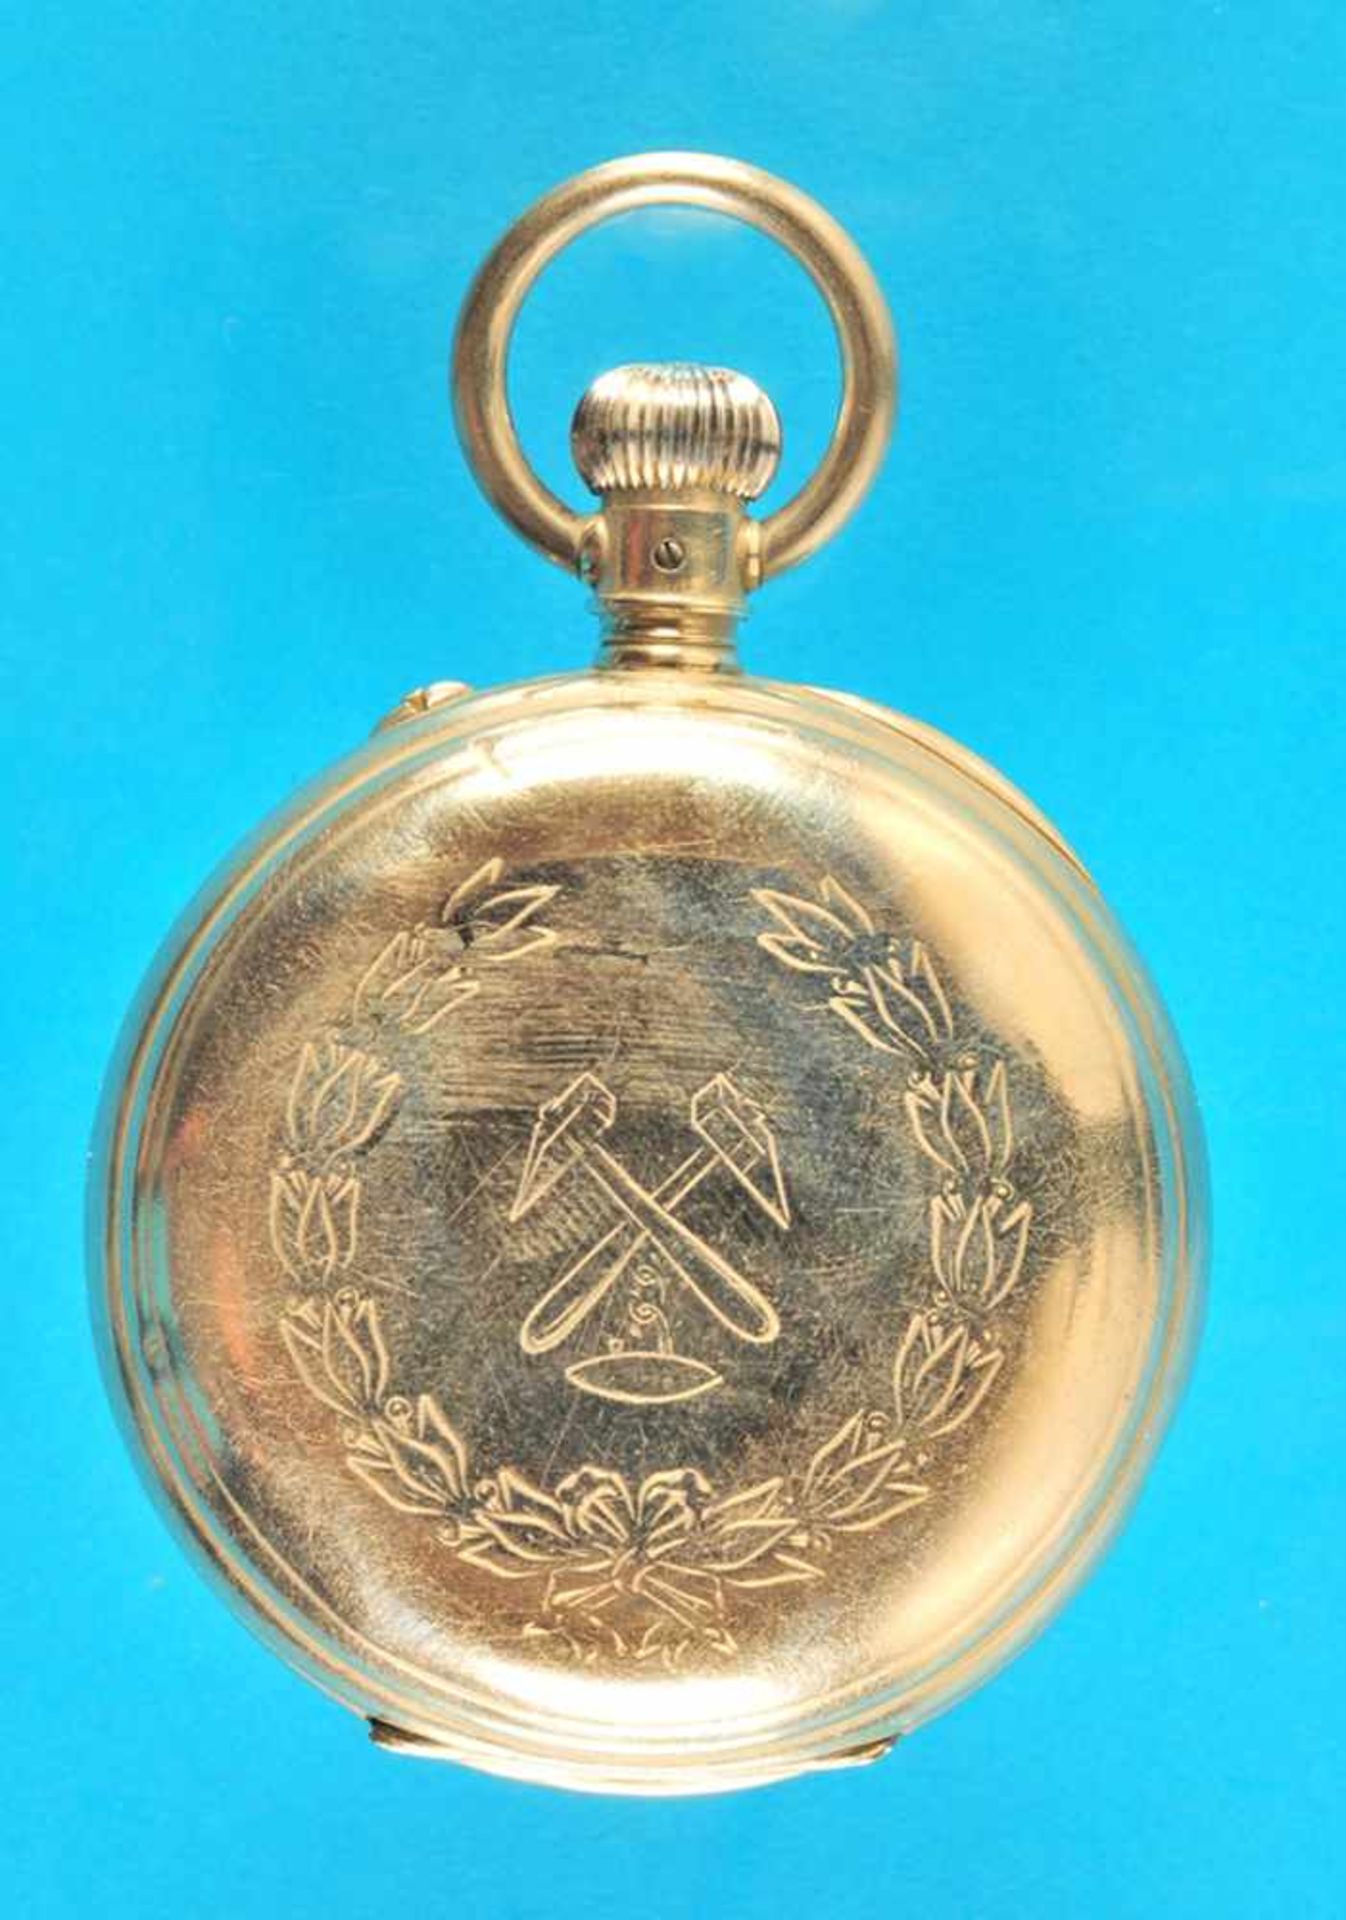 Metal pocket watch, LonginesMetalltaschenuhr, Longines, mit Bergwerksymbol verziertes Gehäuse, - Bild 3 aus 3